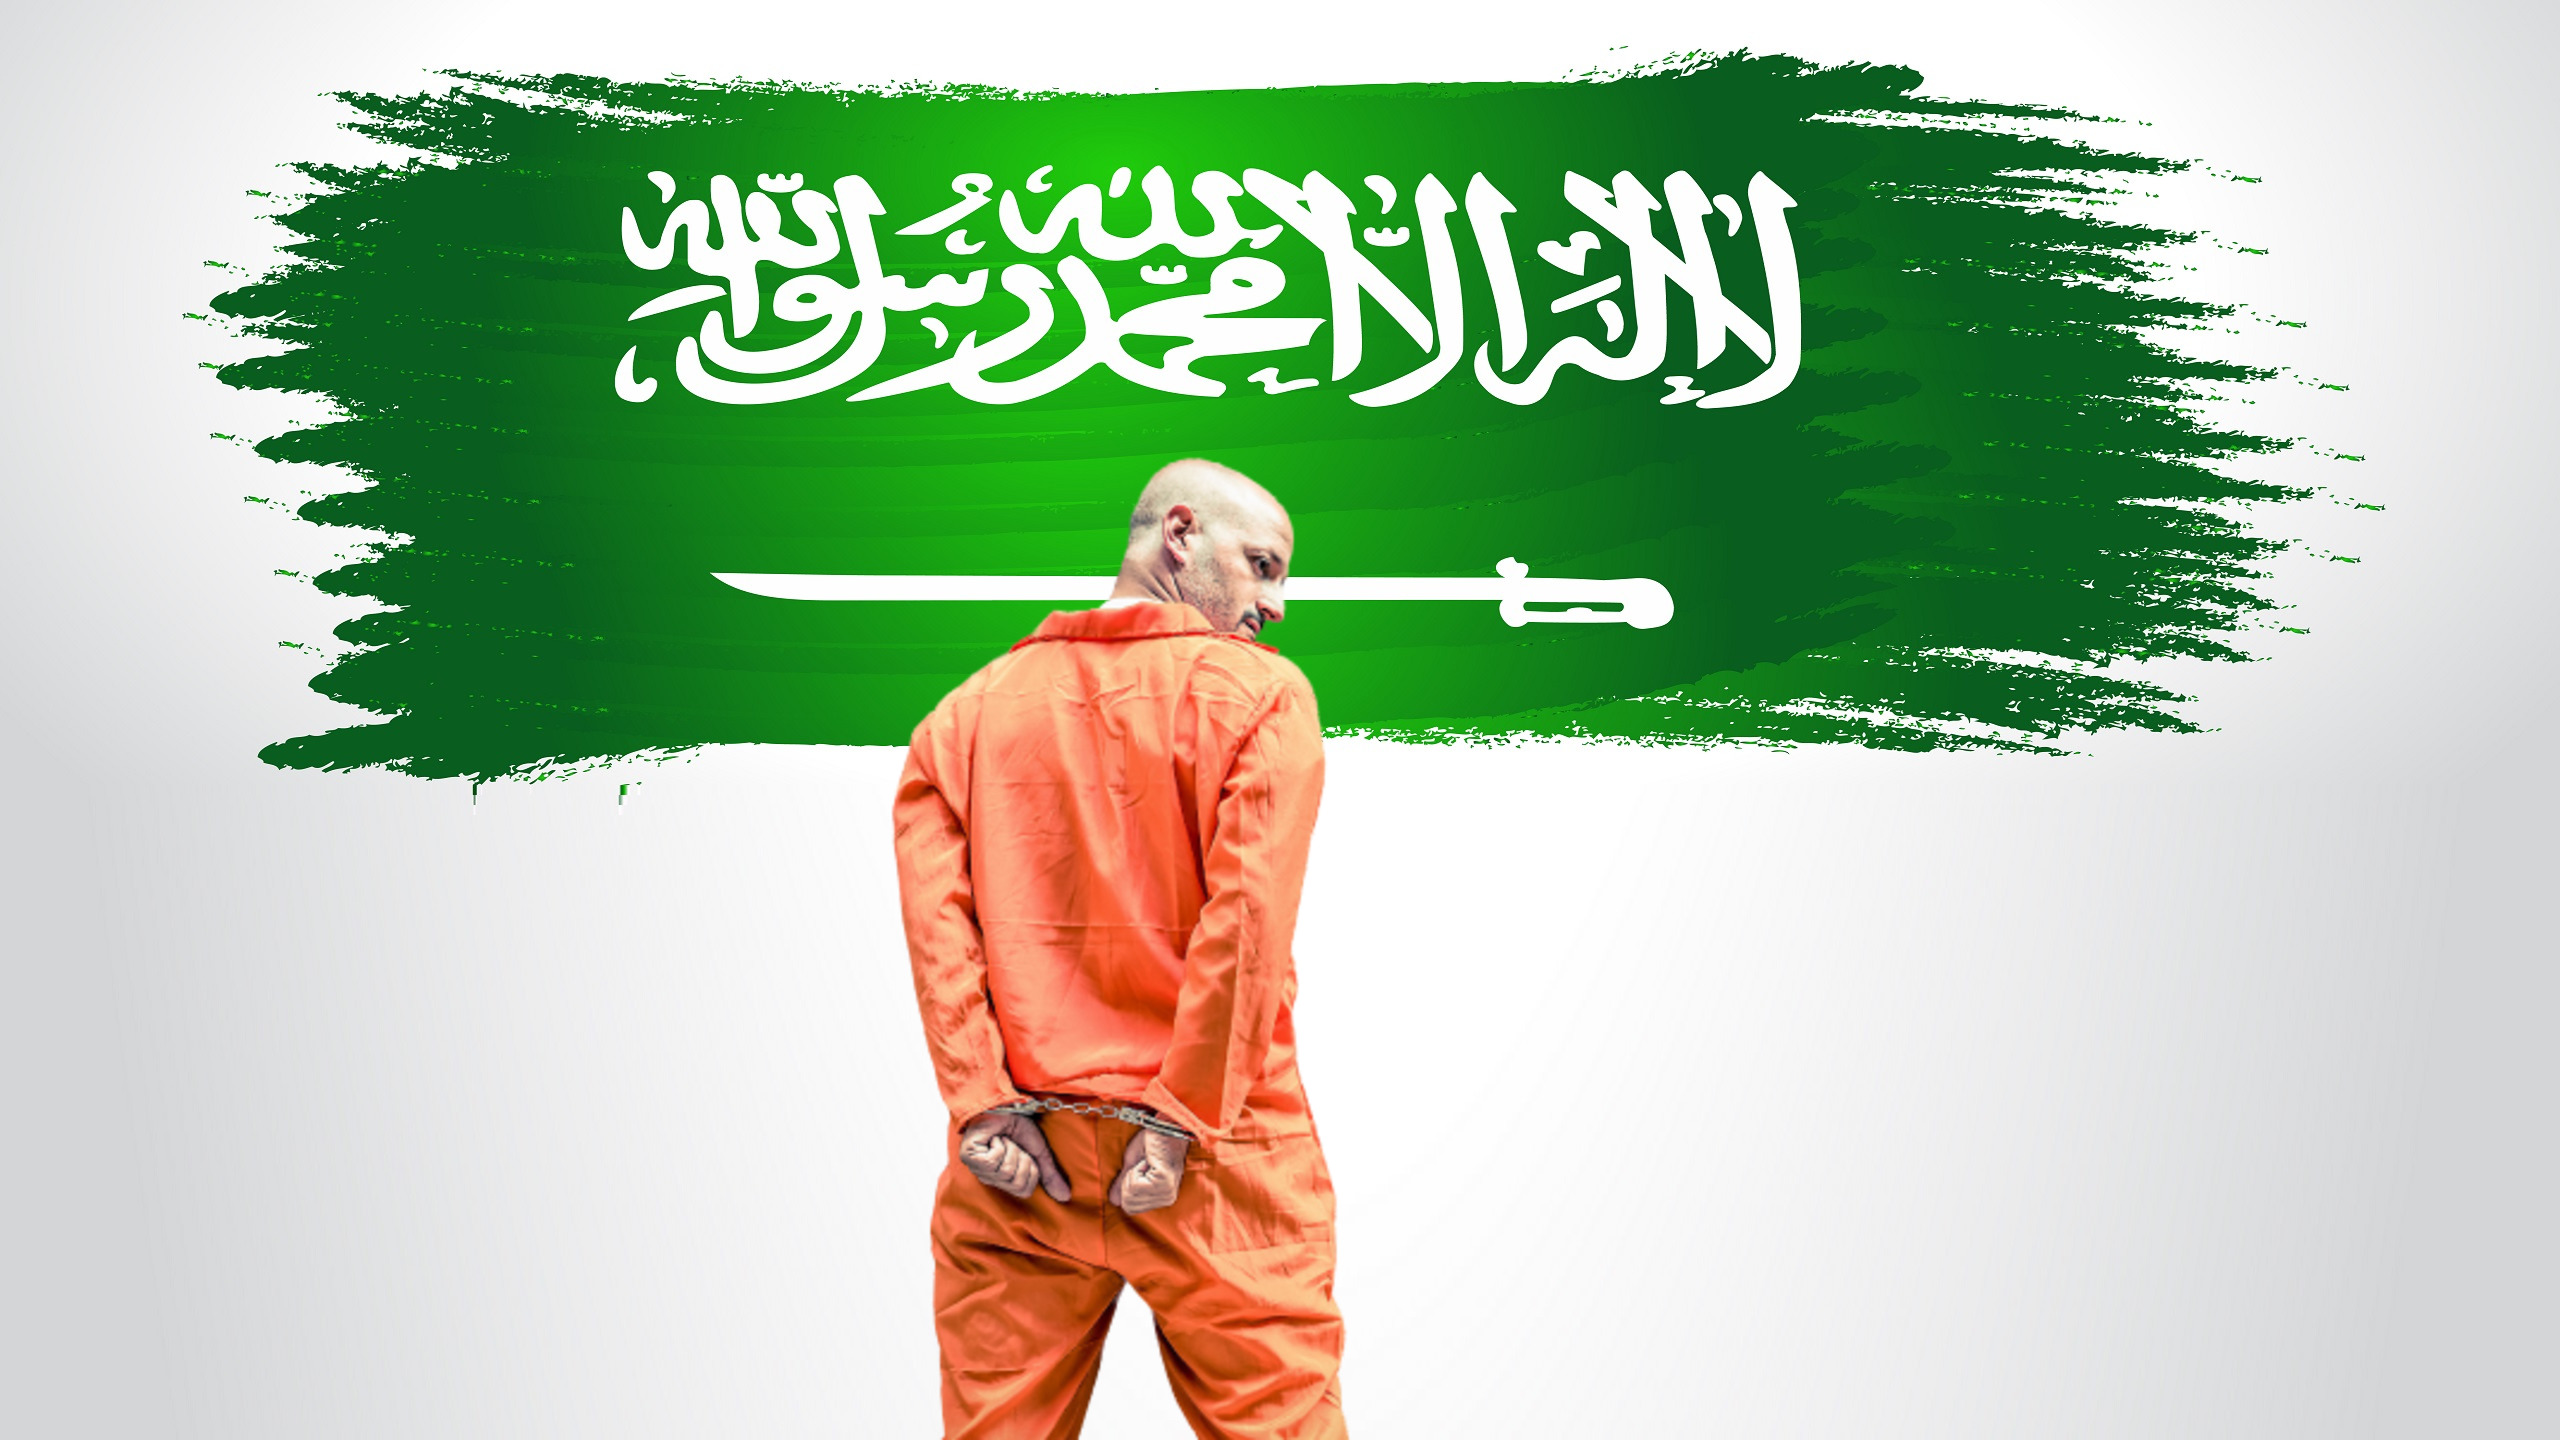 Saudi Arabia Executes 81 People in Single Day